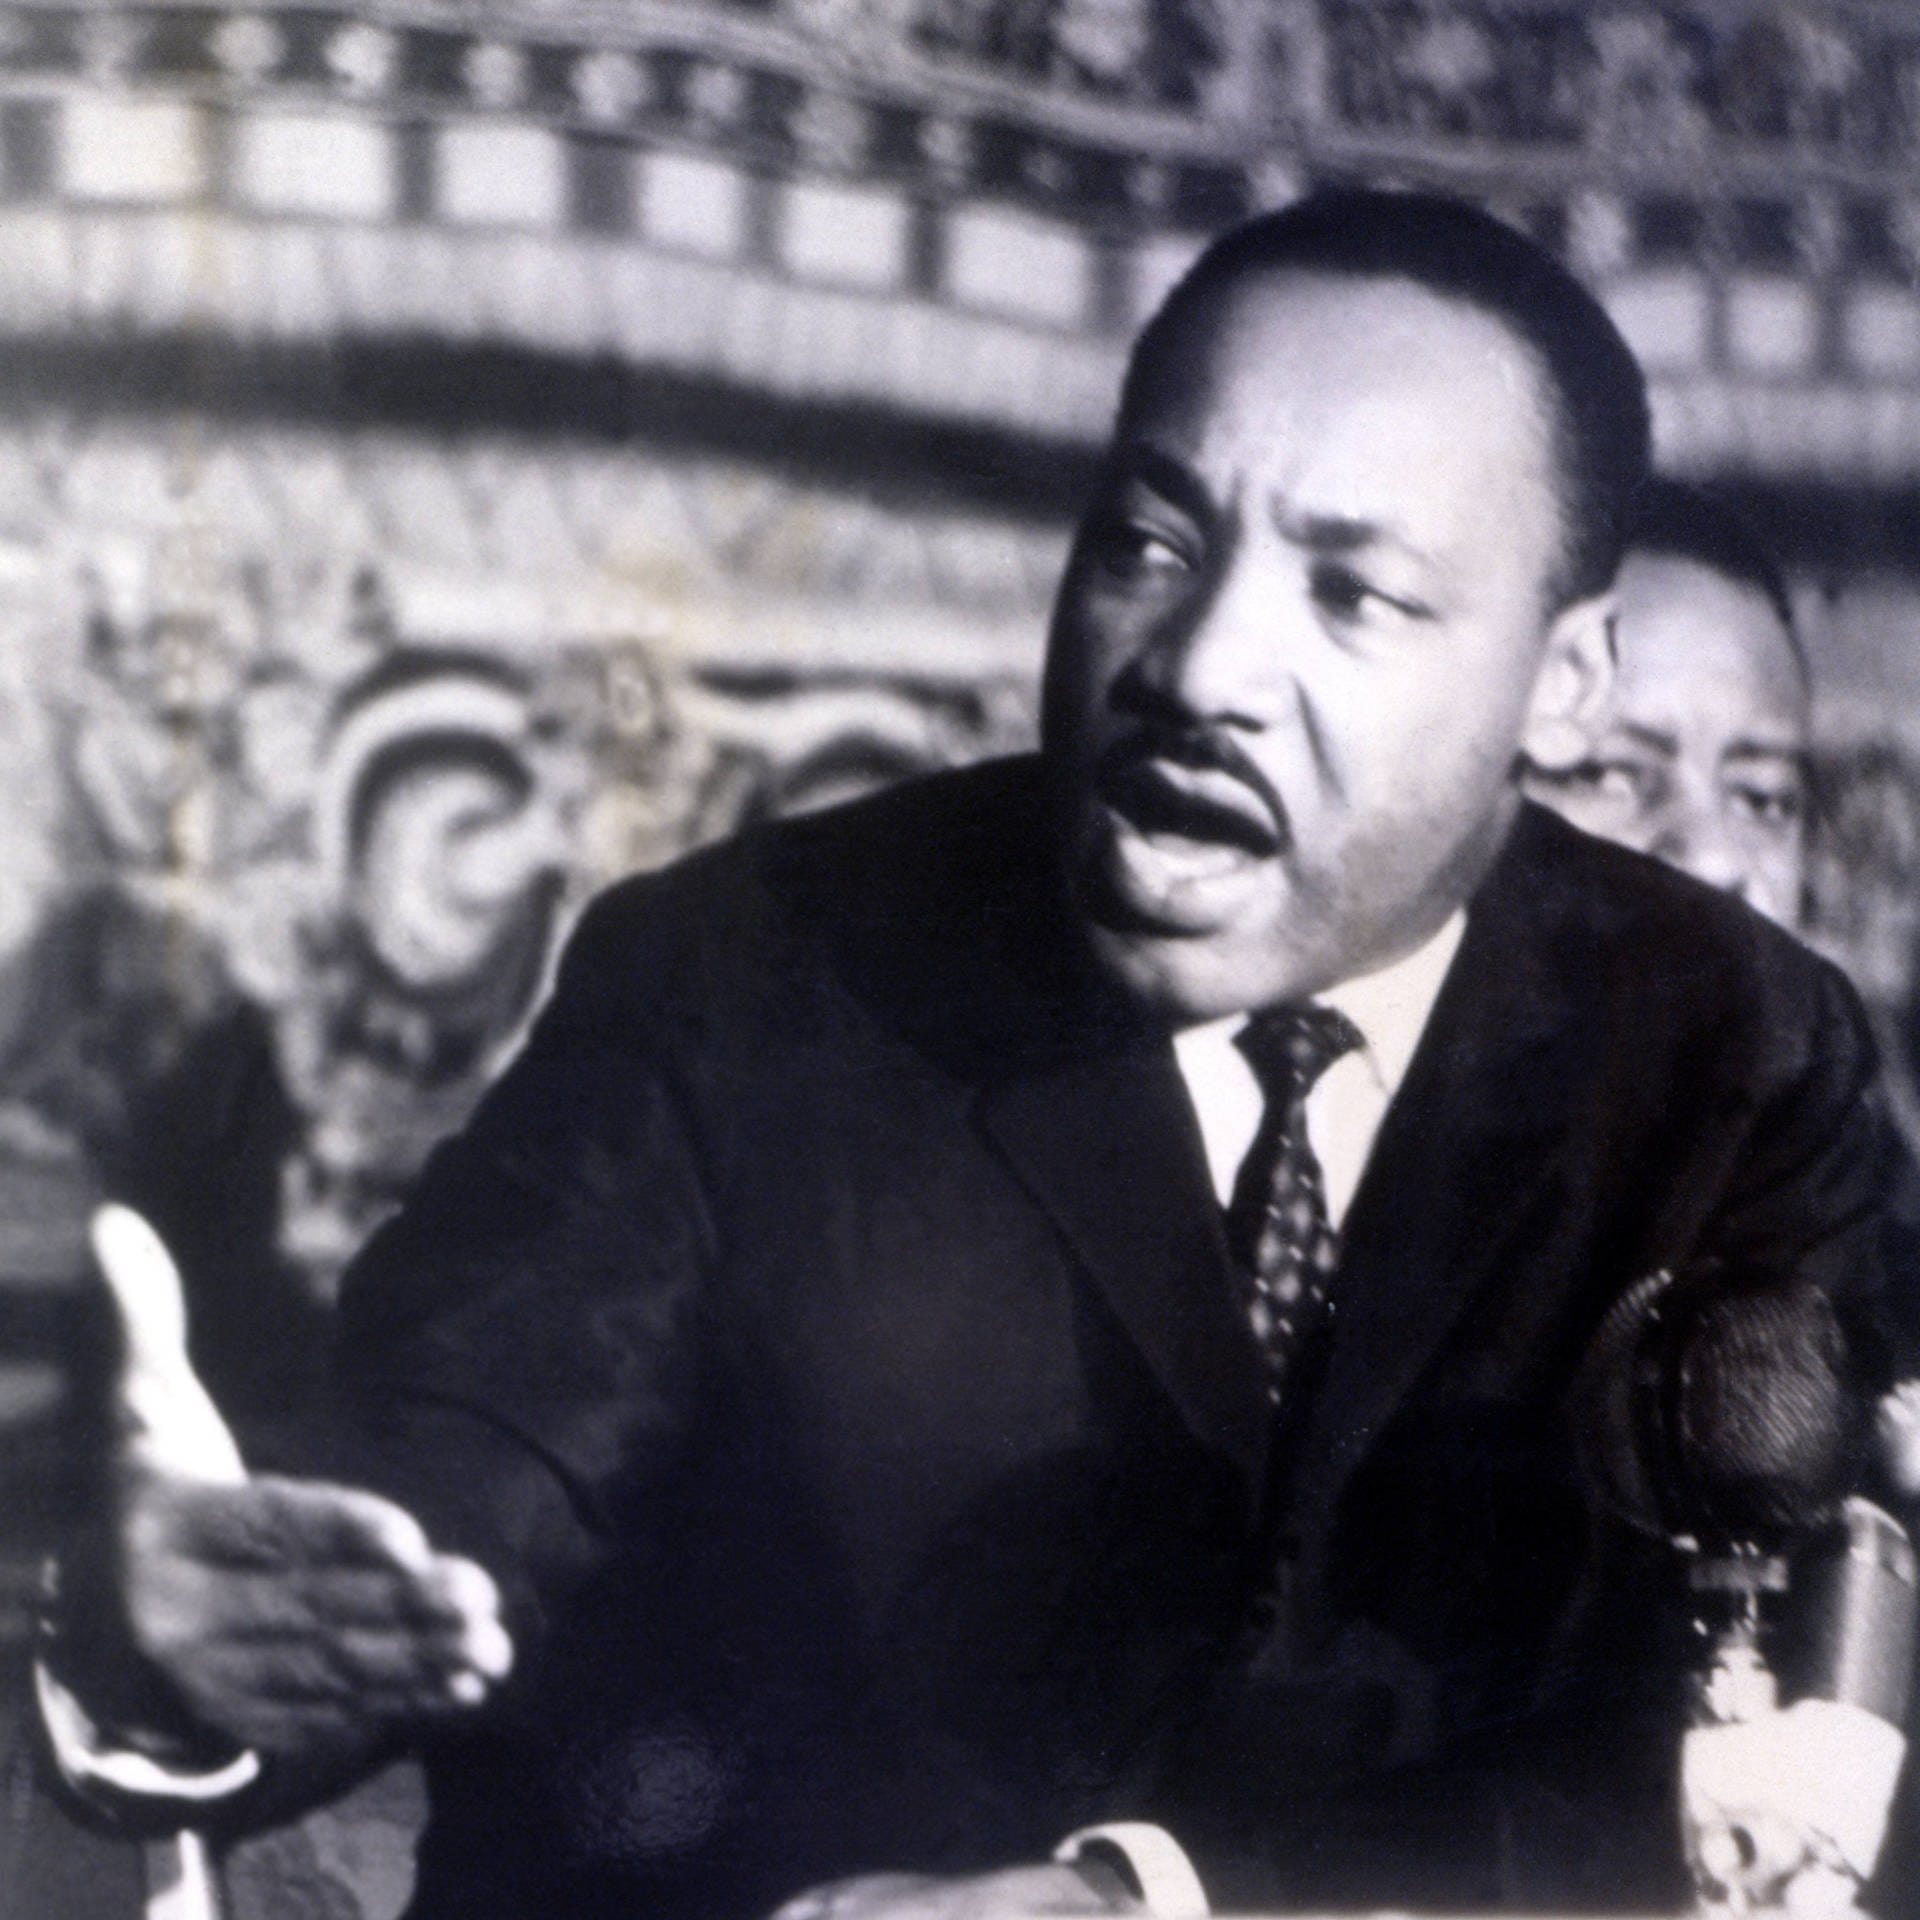 Ermordung von Martin Luther King | 4.4.1968